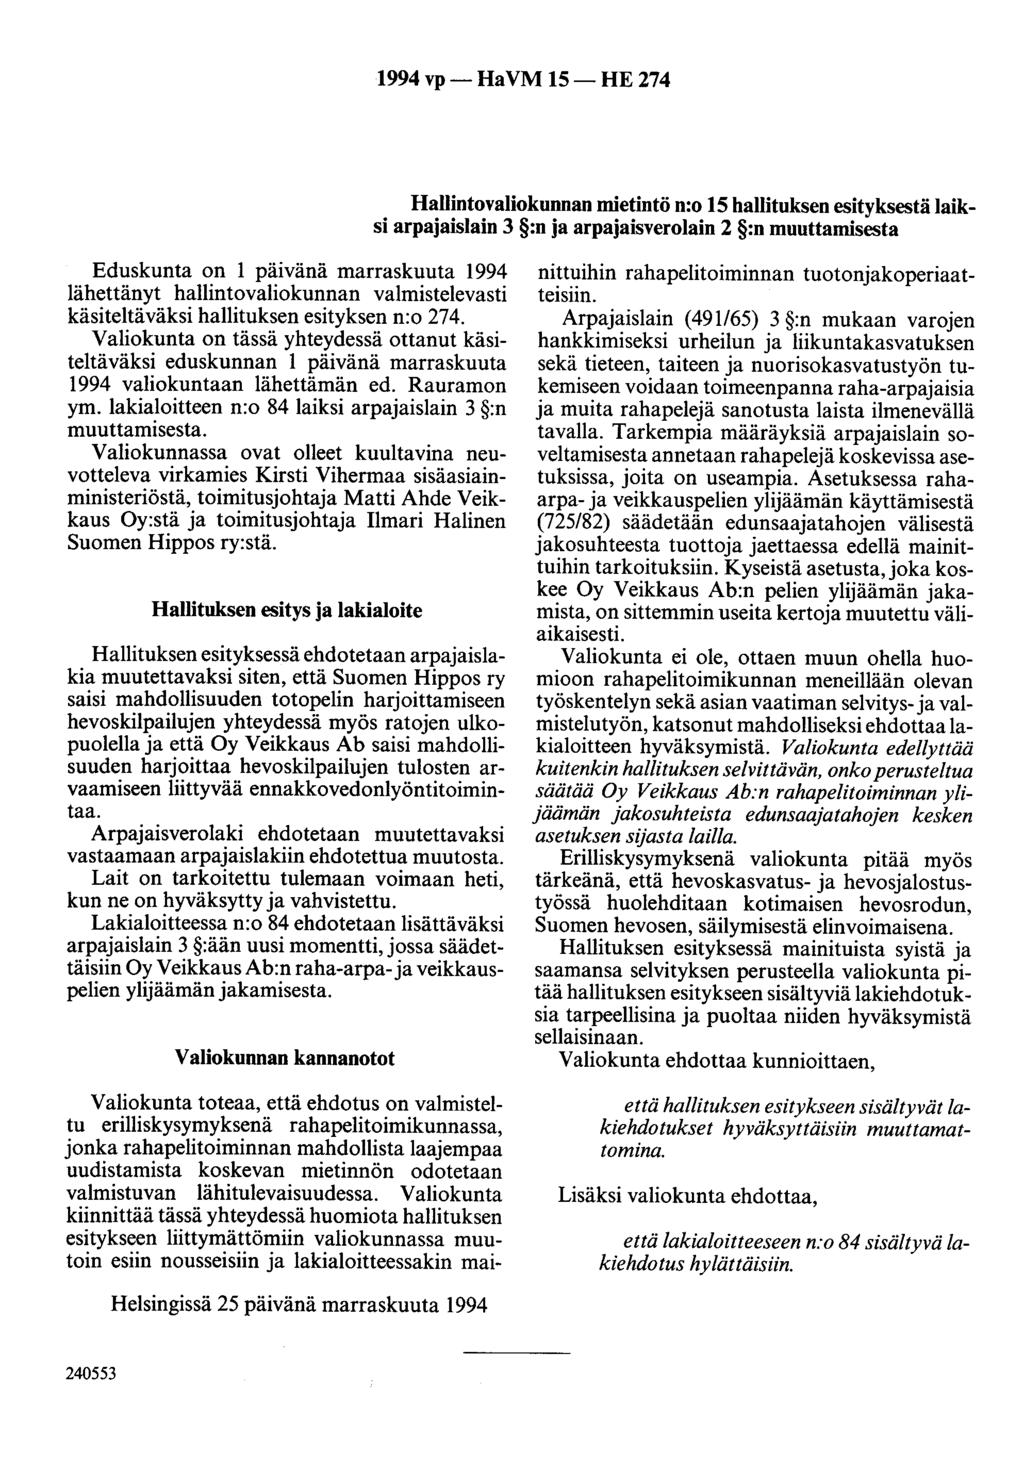 1994 vp- HaVM 15-HE 274 Hallintovaliokunnan mietintö n:o 15 hallituksen esityksestä laiksi arpajaislain 3 :n ja arpajaisverolain 2 :n muuttamisesta Eduskunta on 1 päivänä marraskuuta 1994 lähettänyt